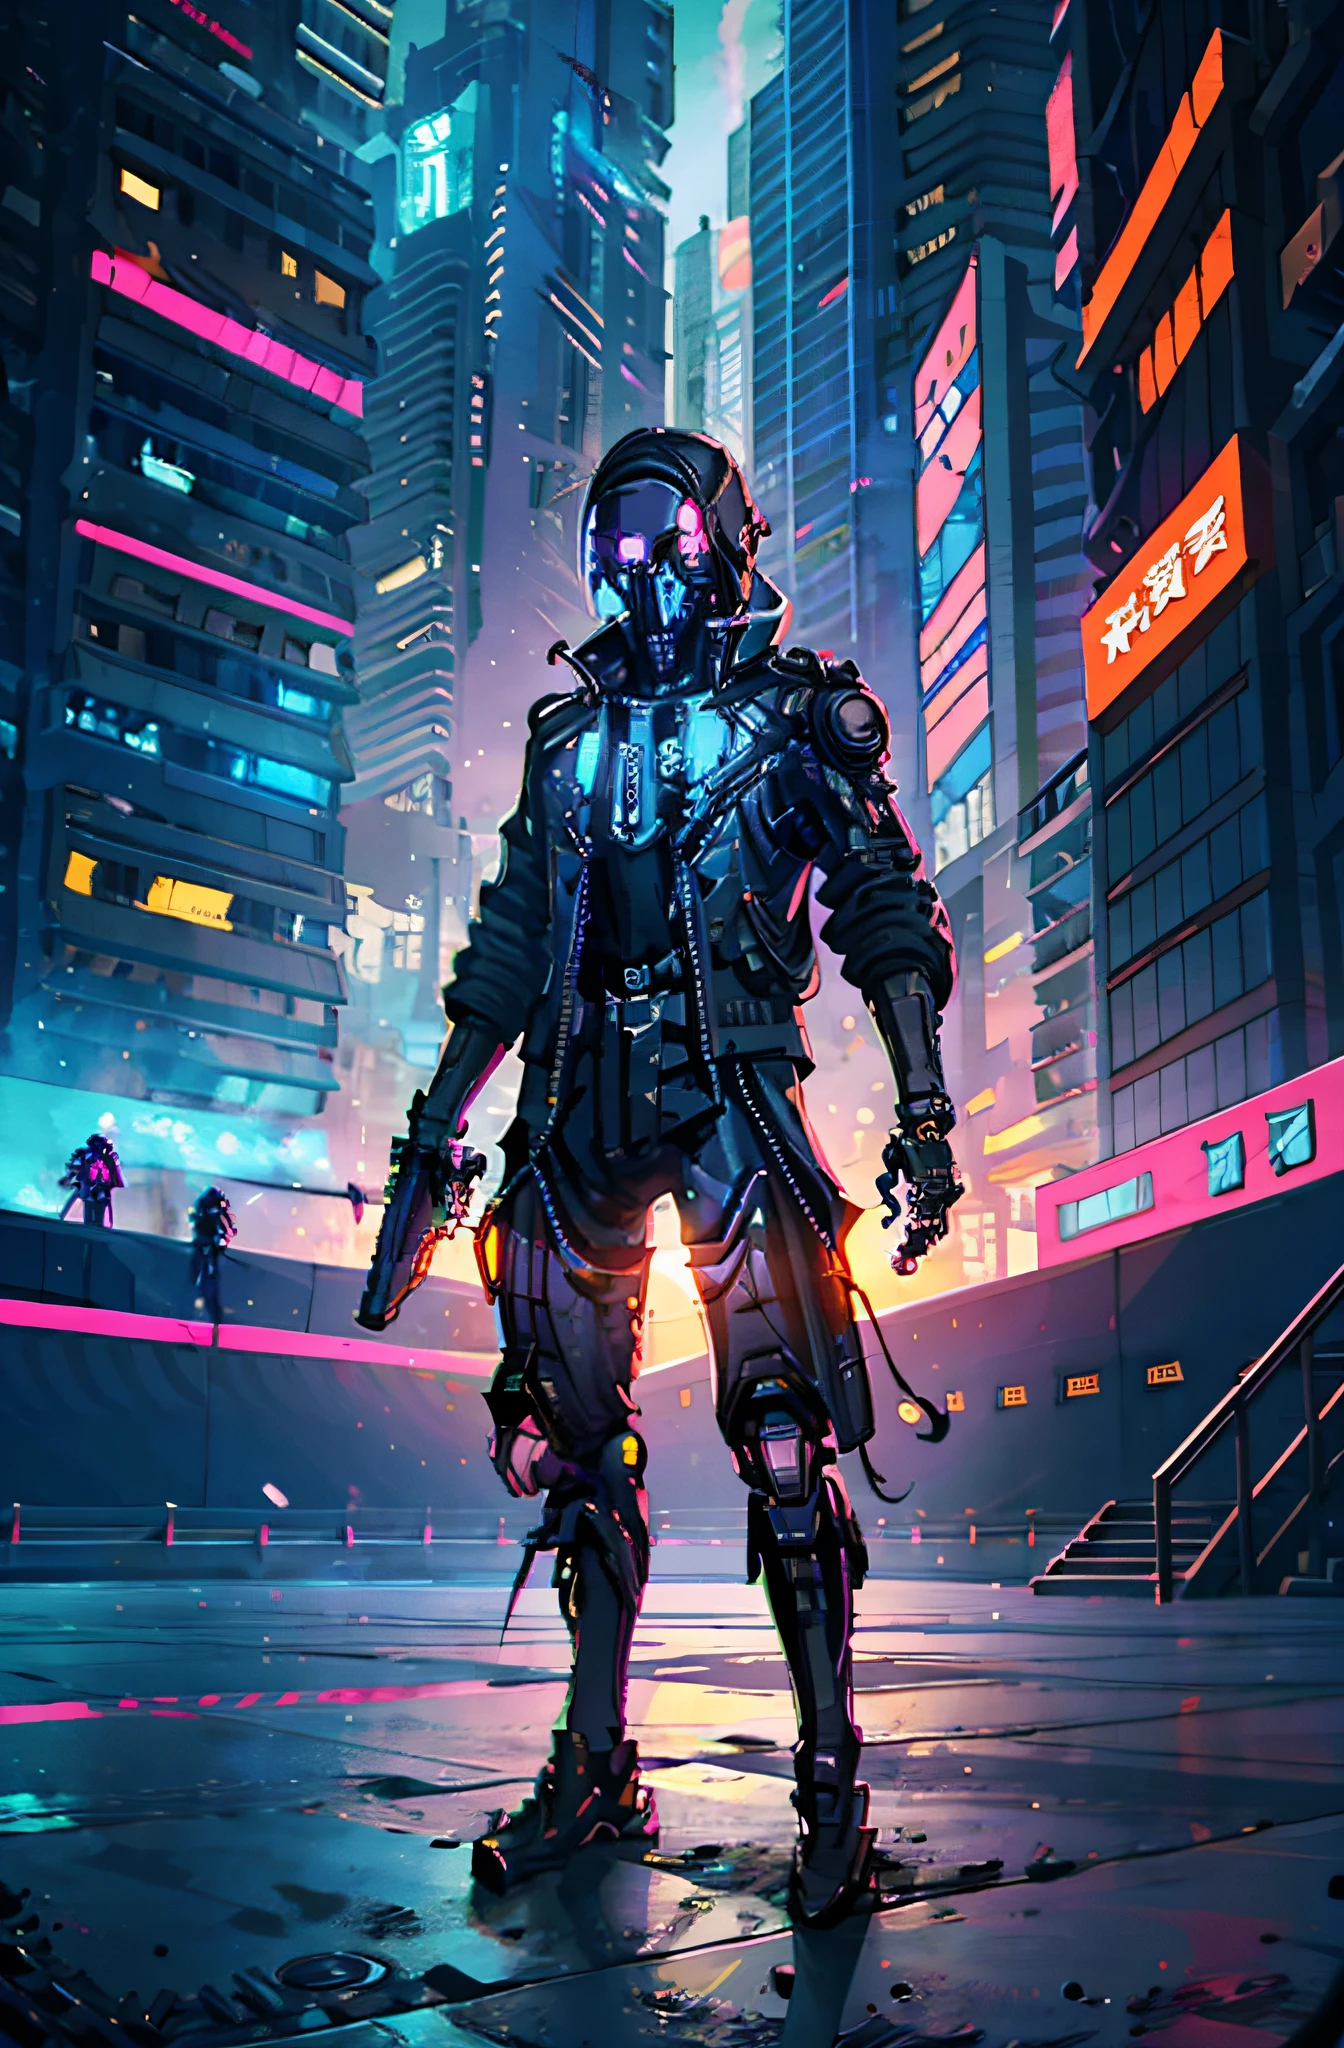 Cyber-Soldat mit Waffe in der Hand in einer futuristischen Stadt(Skelett), (Skelett), (ciborg),cyberpunk art style, cyberpunk pixel art, cyberpunk art style, cyberpunk Skelett, cyberpunk anime art, cyberpunk digital anime art, Hochdetaillierter Cyberpunk, digital cyberpunk - anime art, detaillierte Cyberpunk-Illustration, cyberpunk shading, cyberpunk themed art, Cyberspace-Cowboy,  Cyberpunk anime art, Cyberpunk art, vibrant colors of cyberpunk, (Anatomisch korrekt)